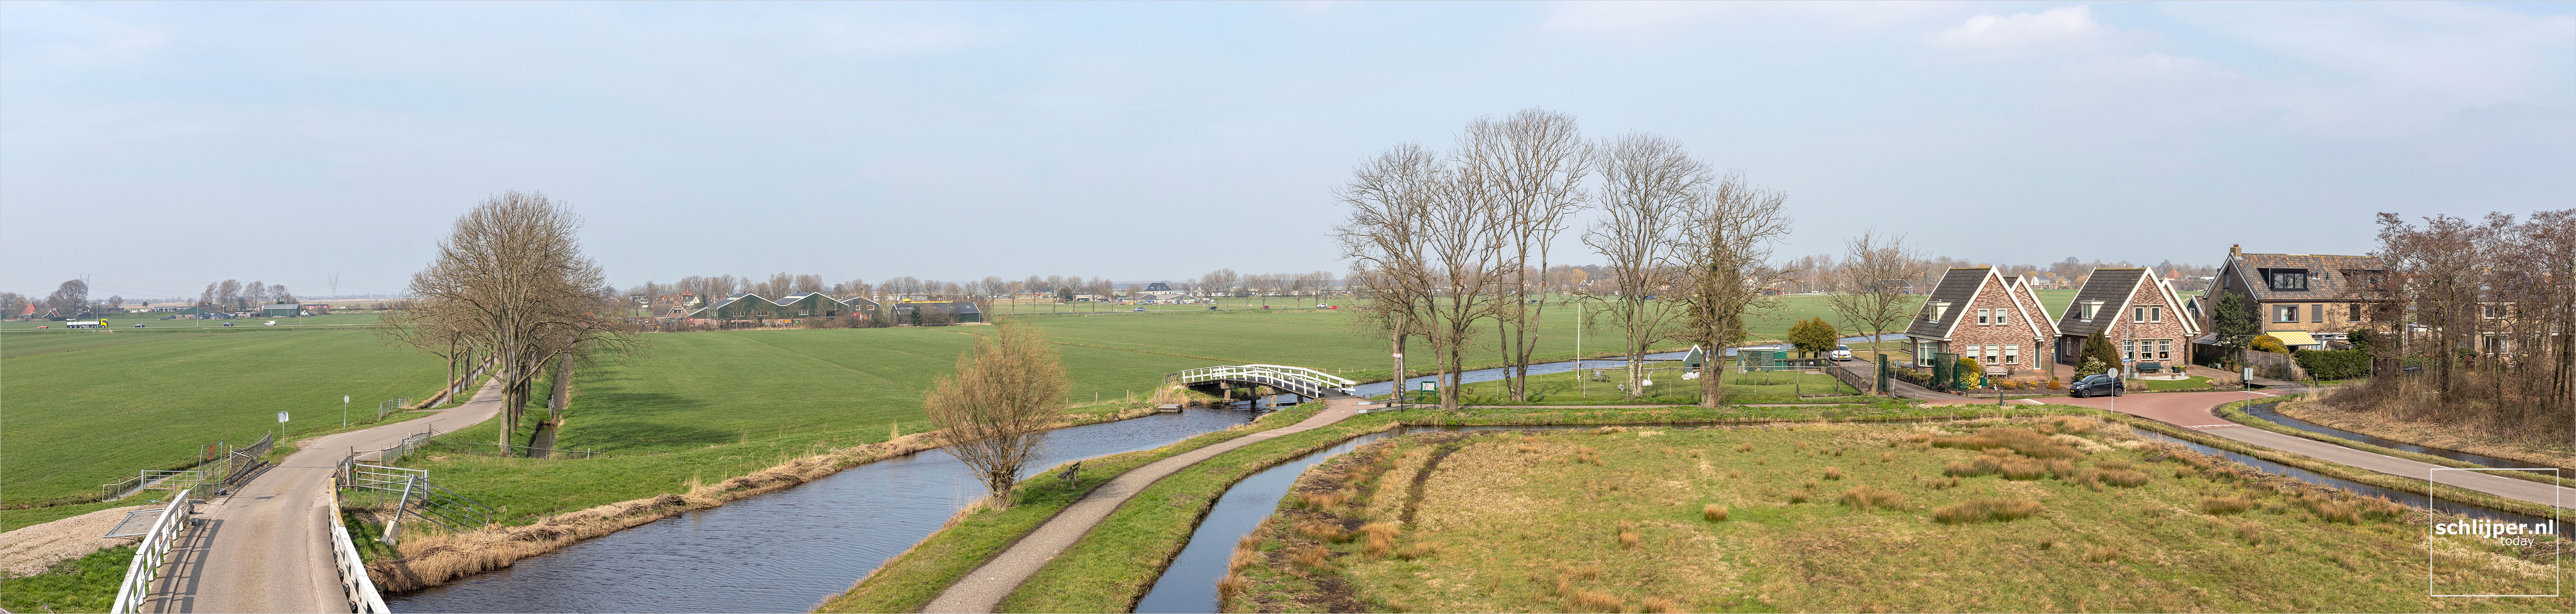 The Netherlands, Broek in Waterland, 24 maart 2021